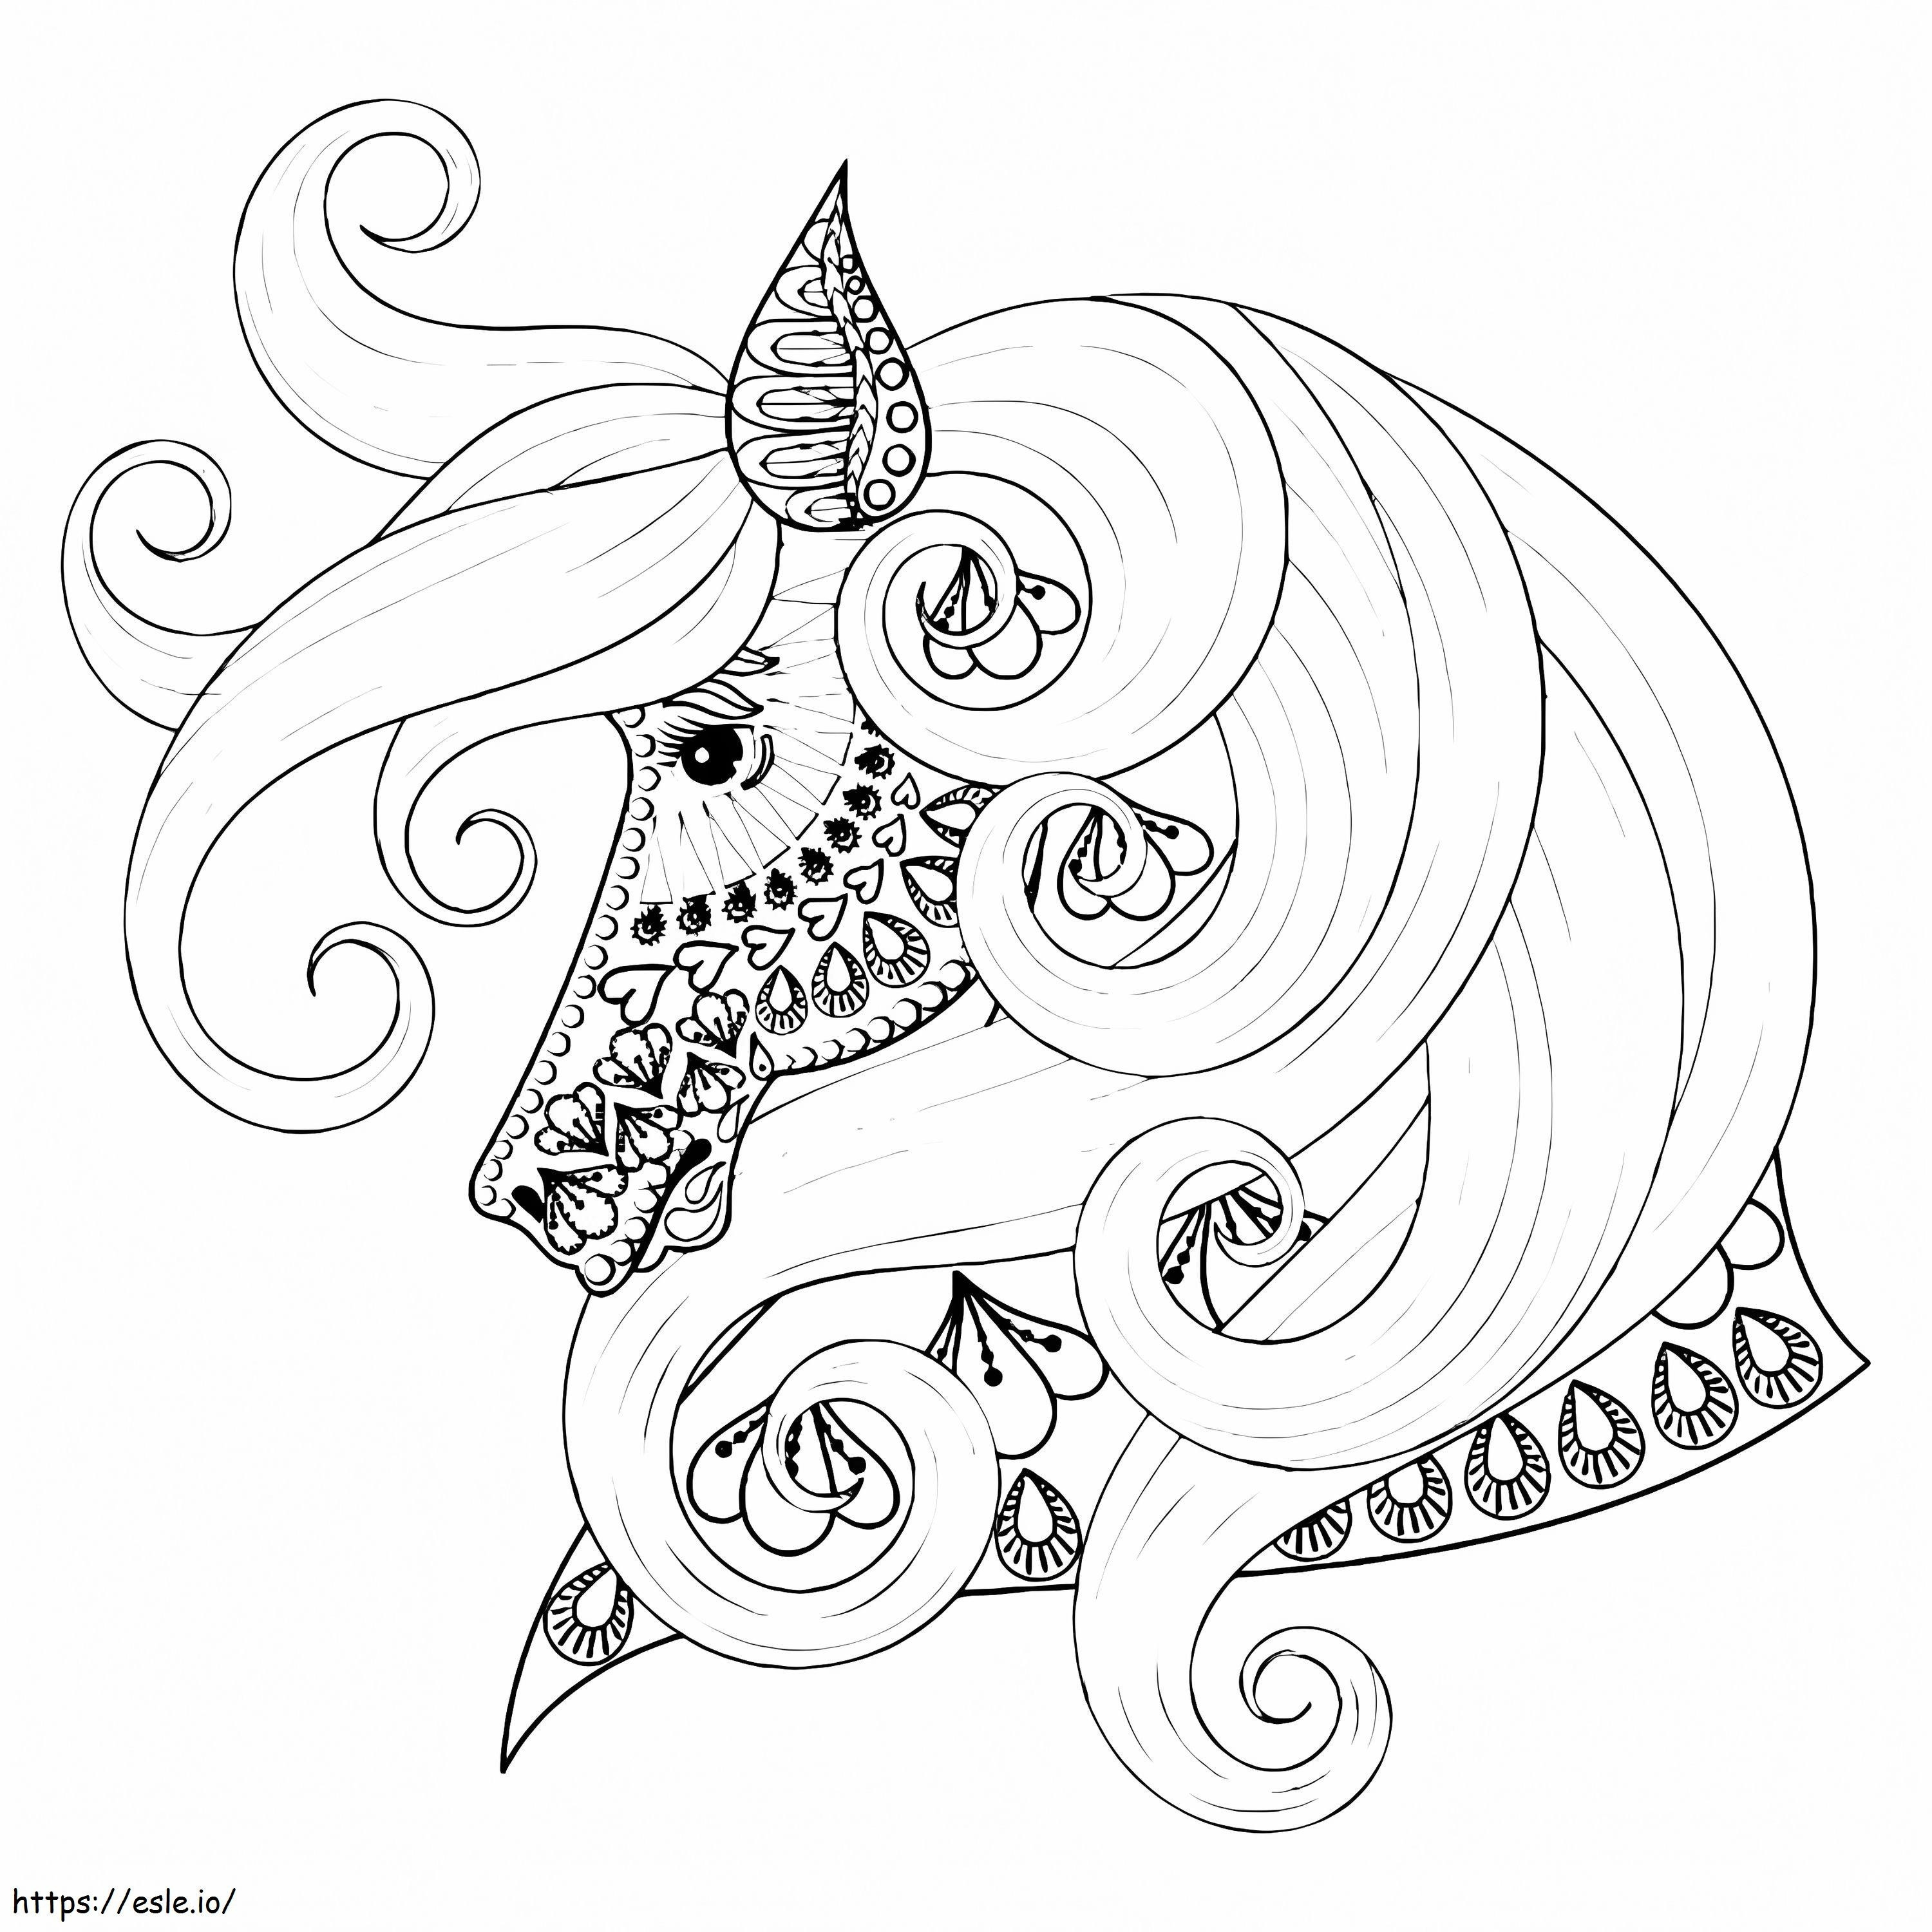 Unicorn Mandala 3 coloring page